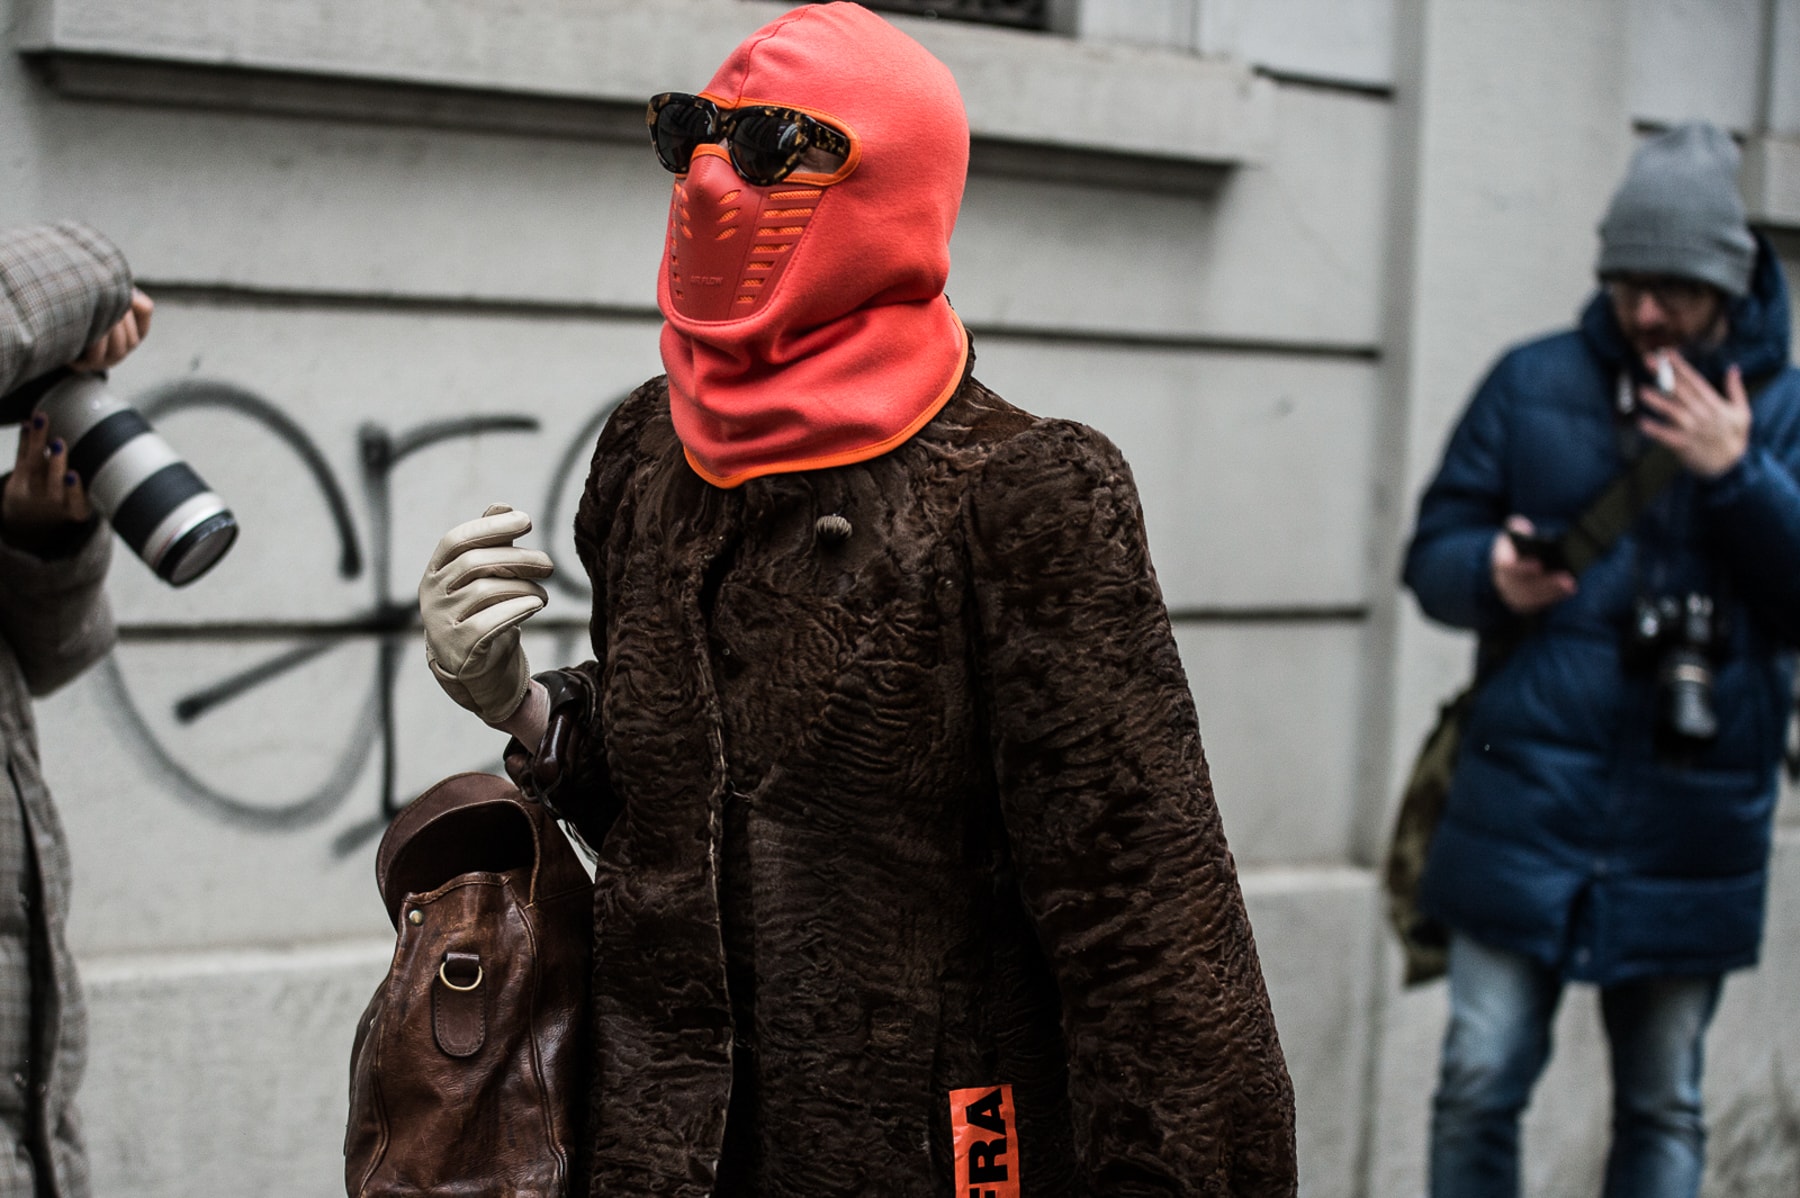 Milan Fashion Week Fall/Winter 2018 Street Style men's women's best streetsnaps